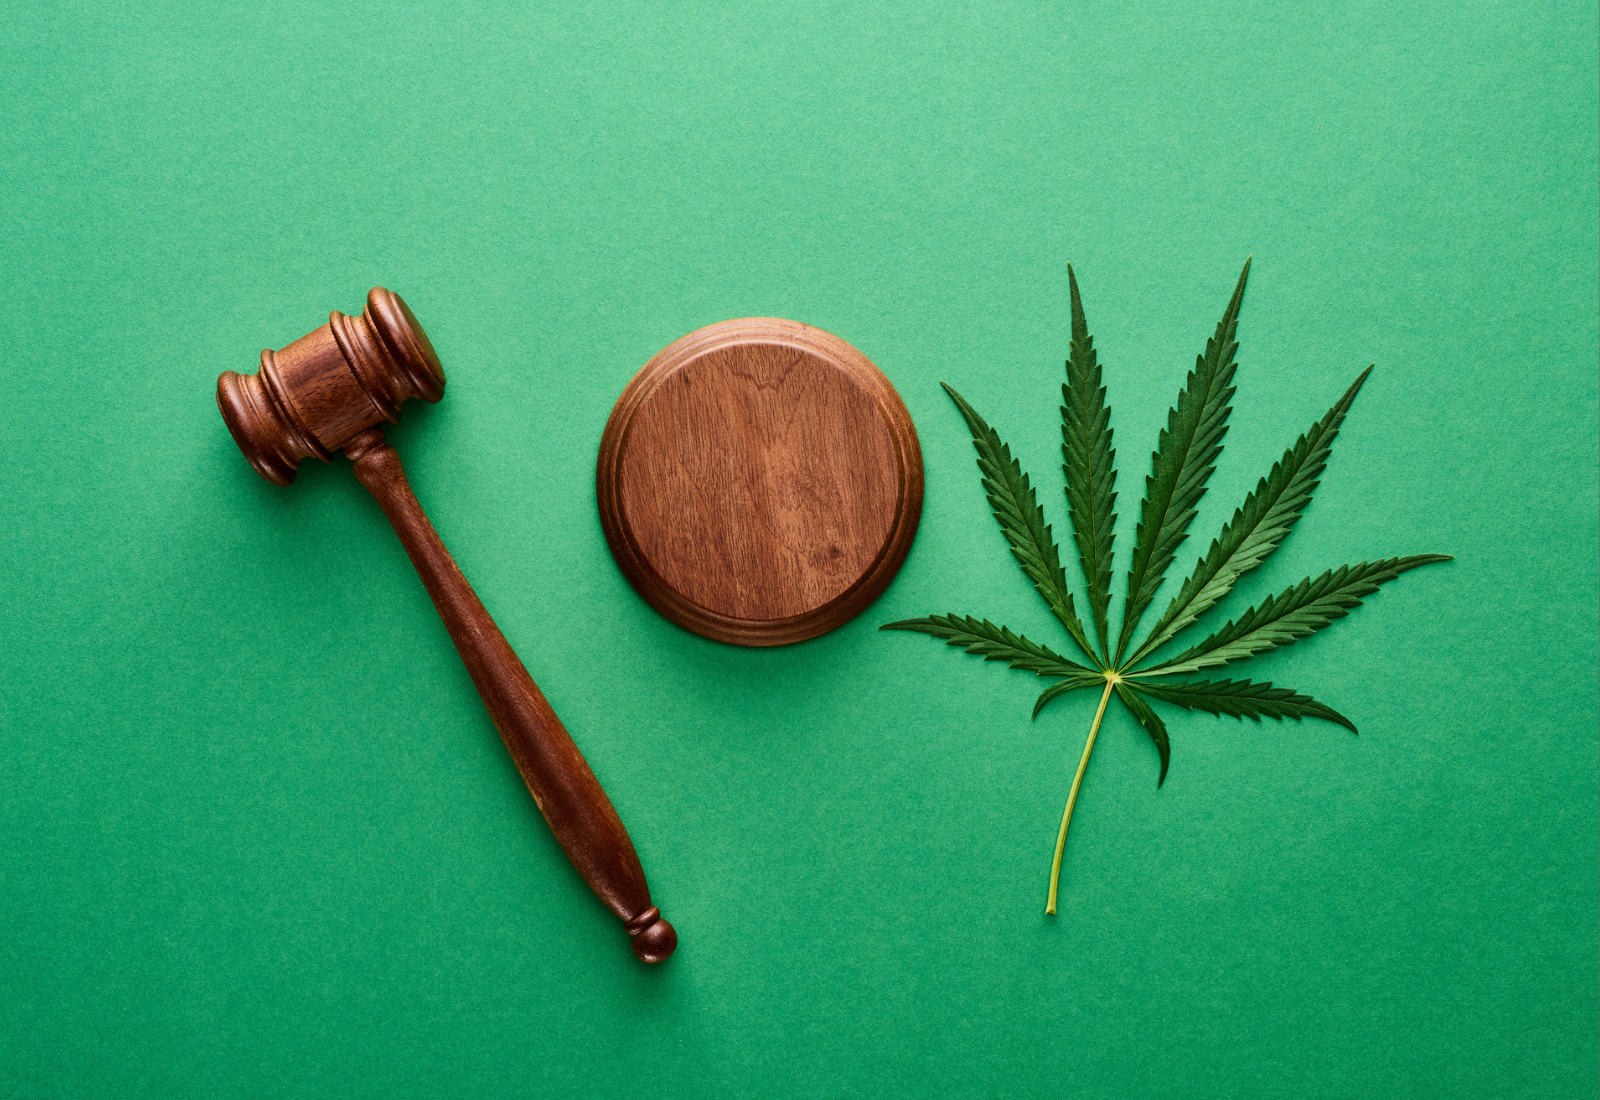 大麻生物质的诉讼